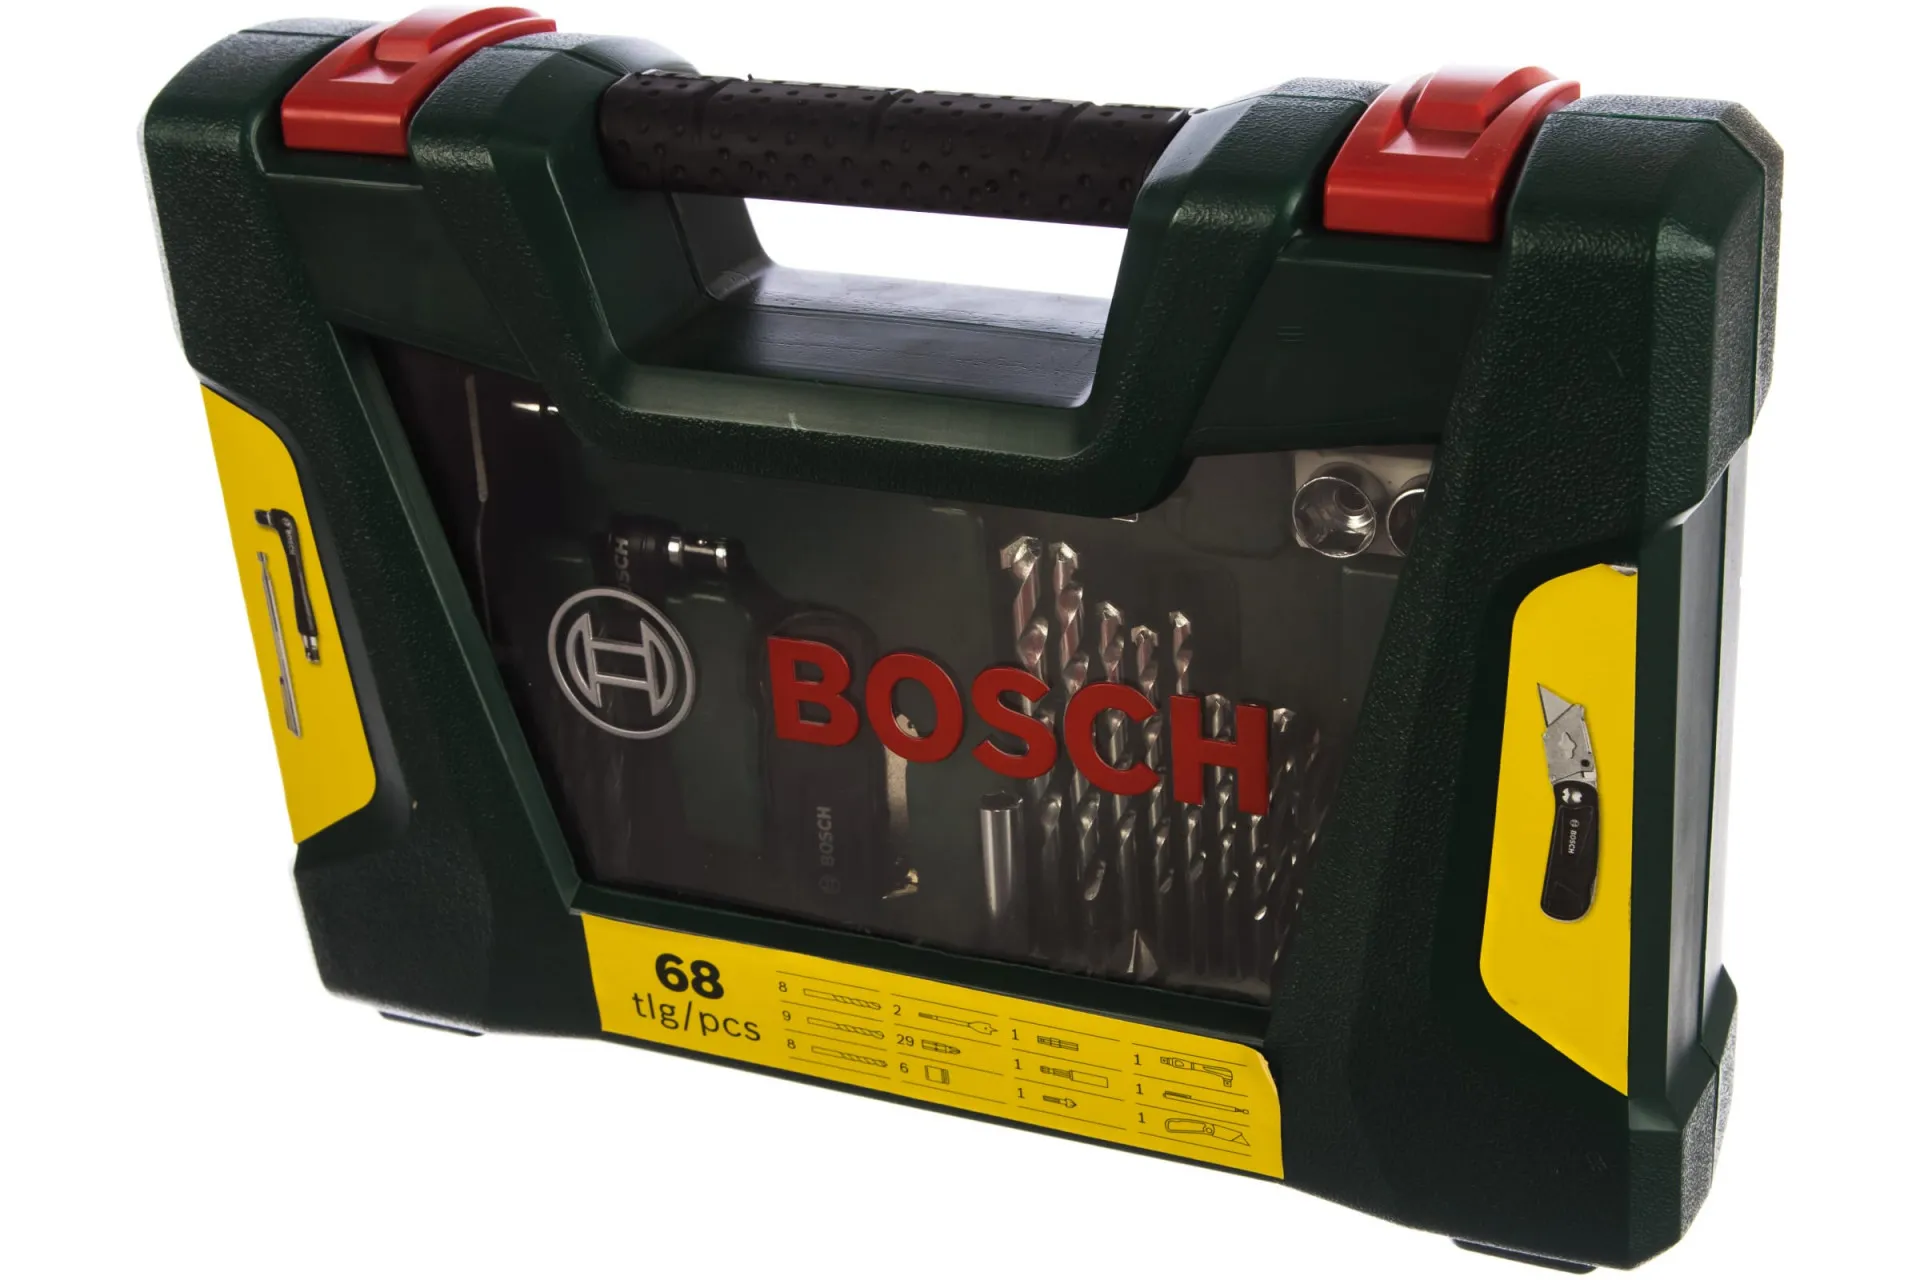 Перфоратор BOSCH PBH 2100 RE Compact + набор сверл и бит V-Line (68 предметов) Bosch#6